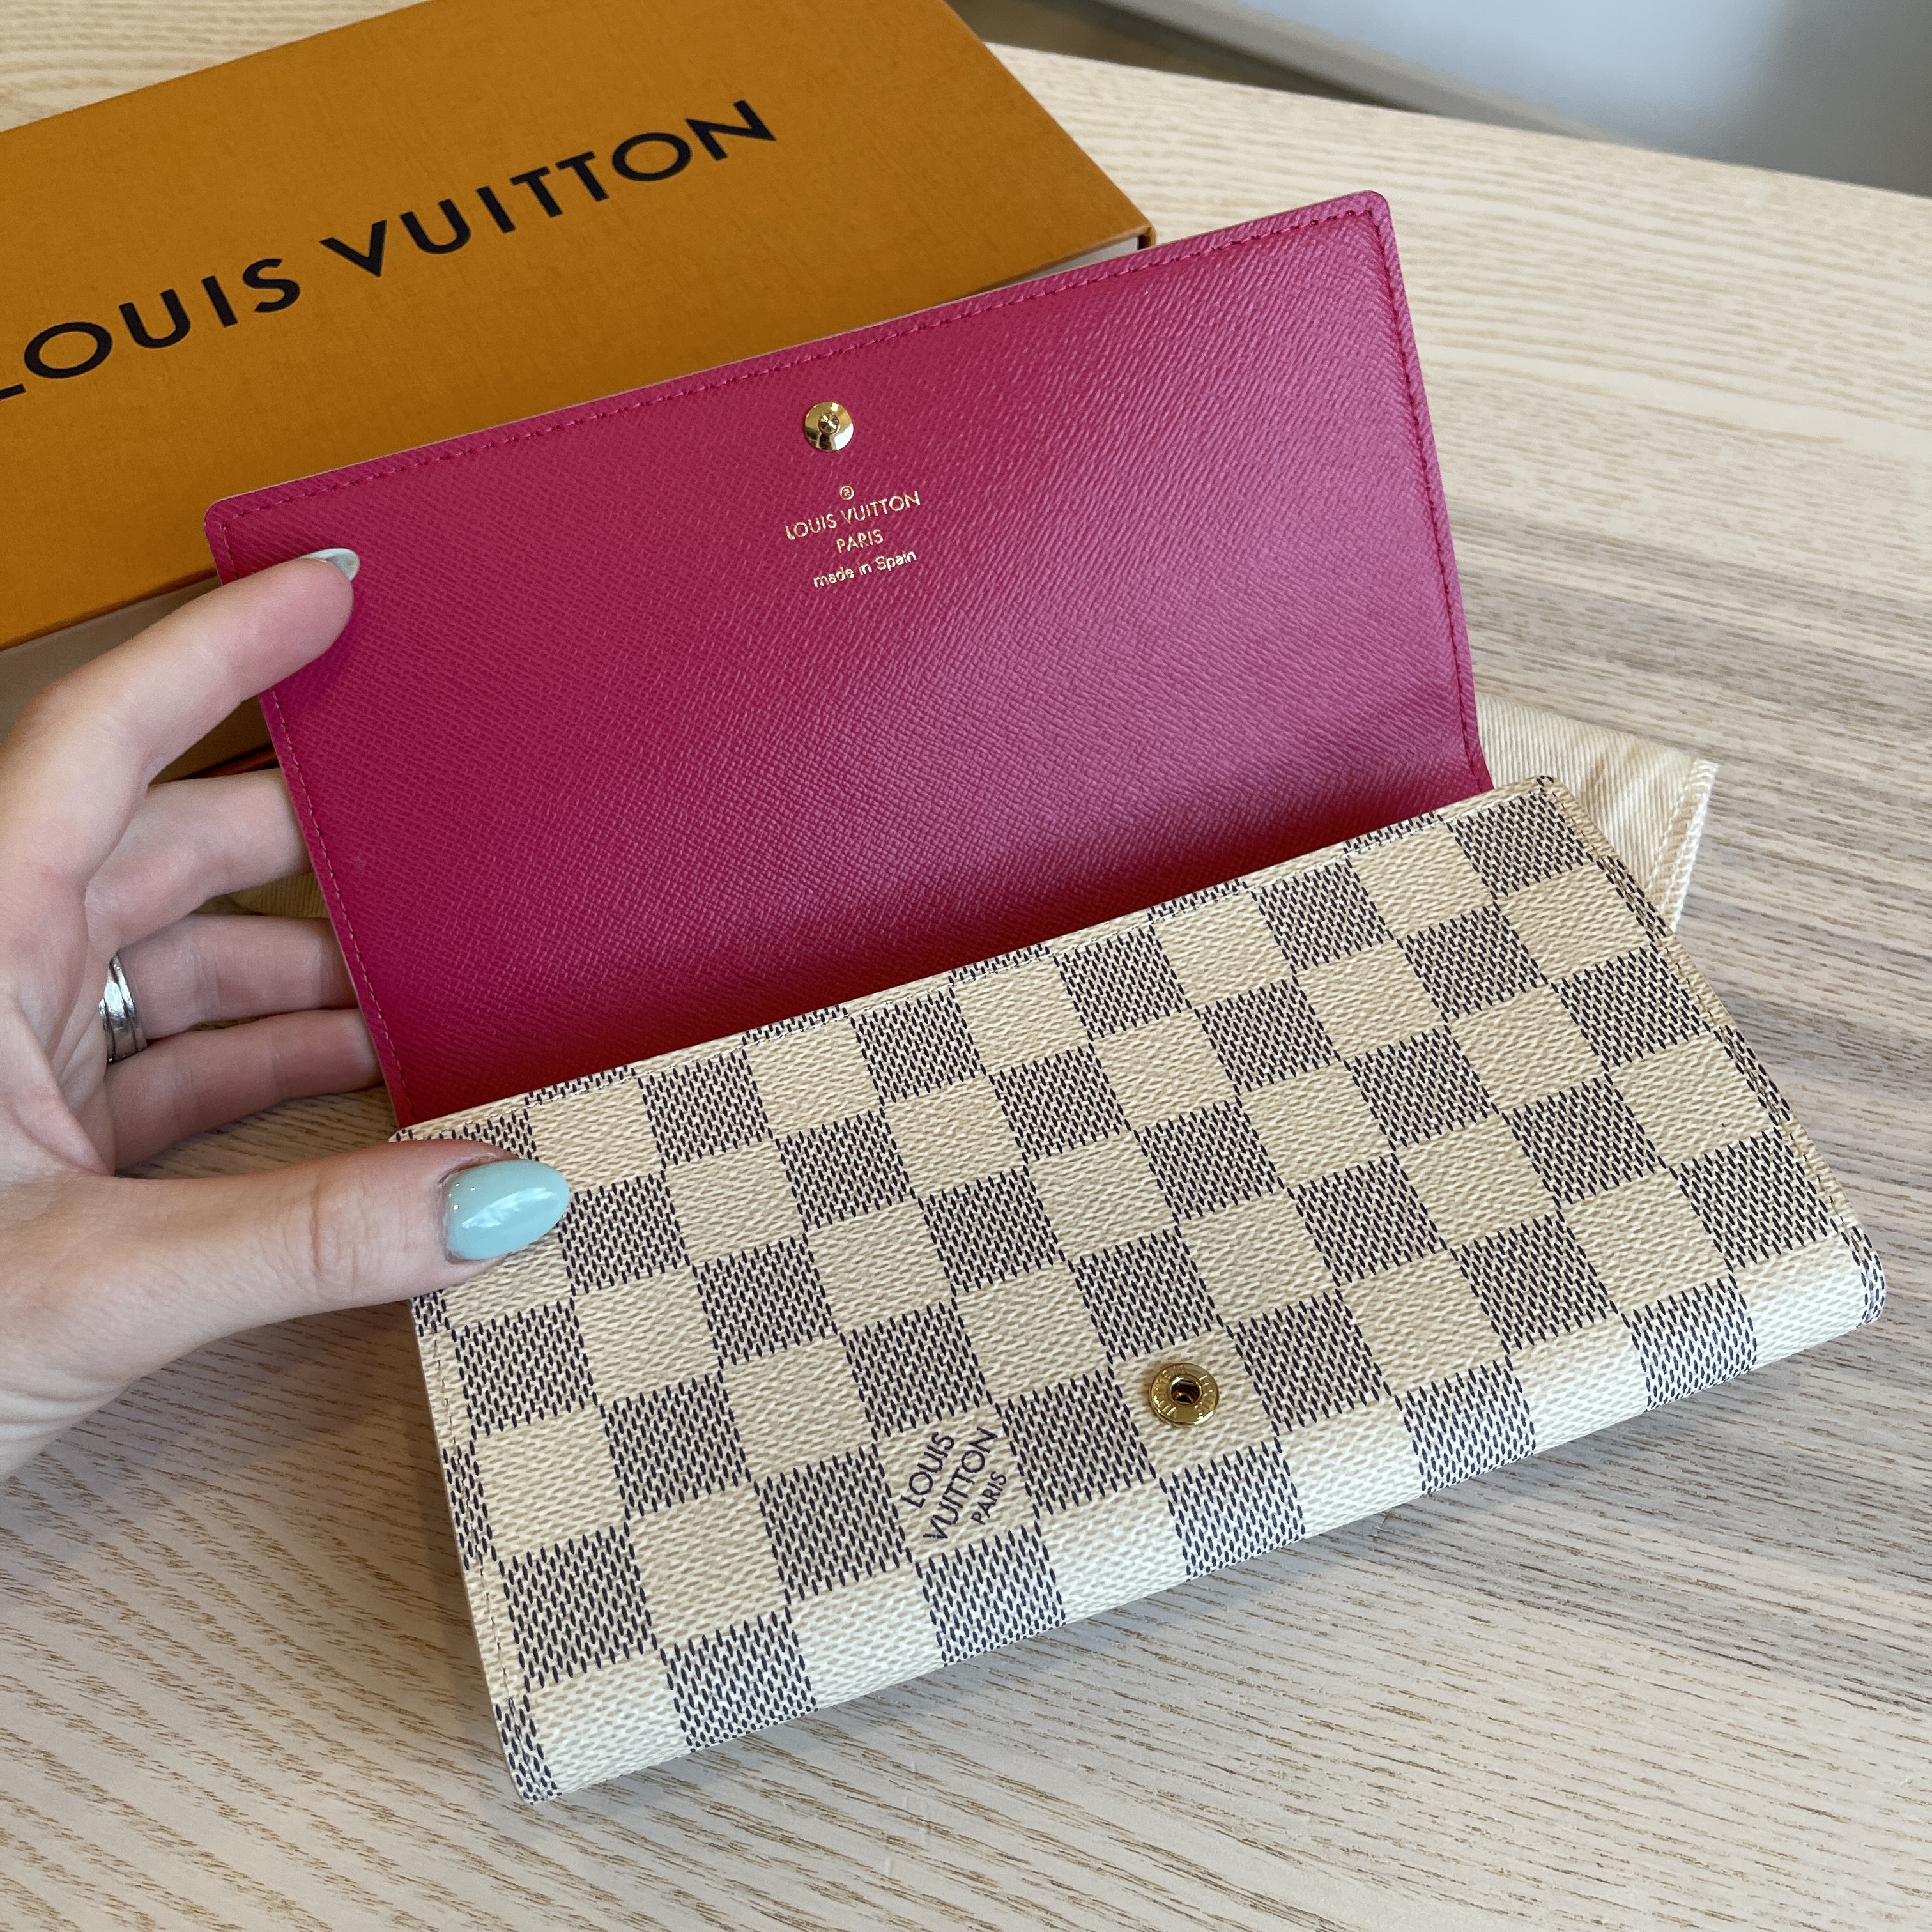 Louis Vuitton Sarah Wallet Damier Azur – The Luxe Pursuit